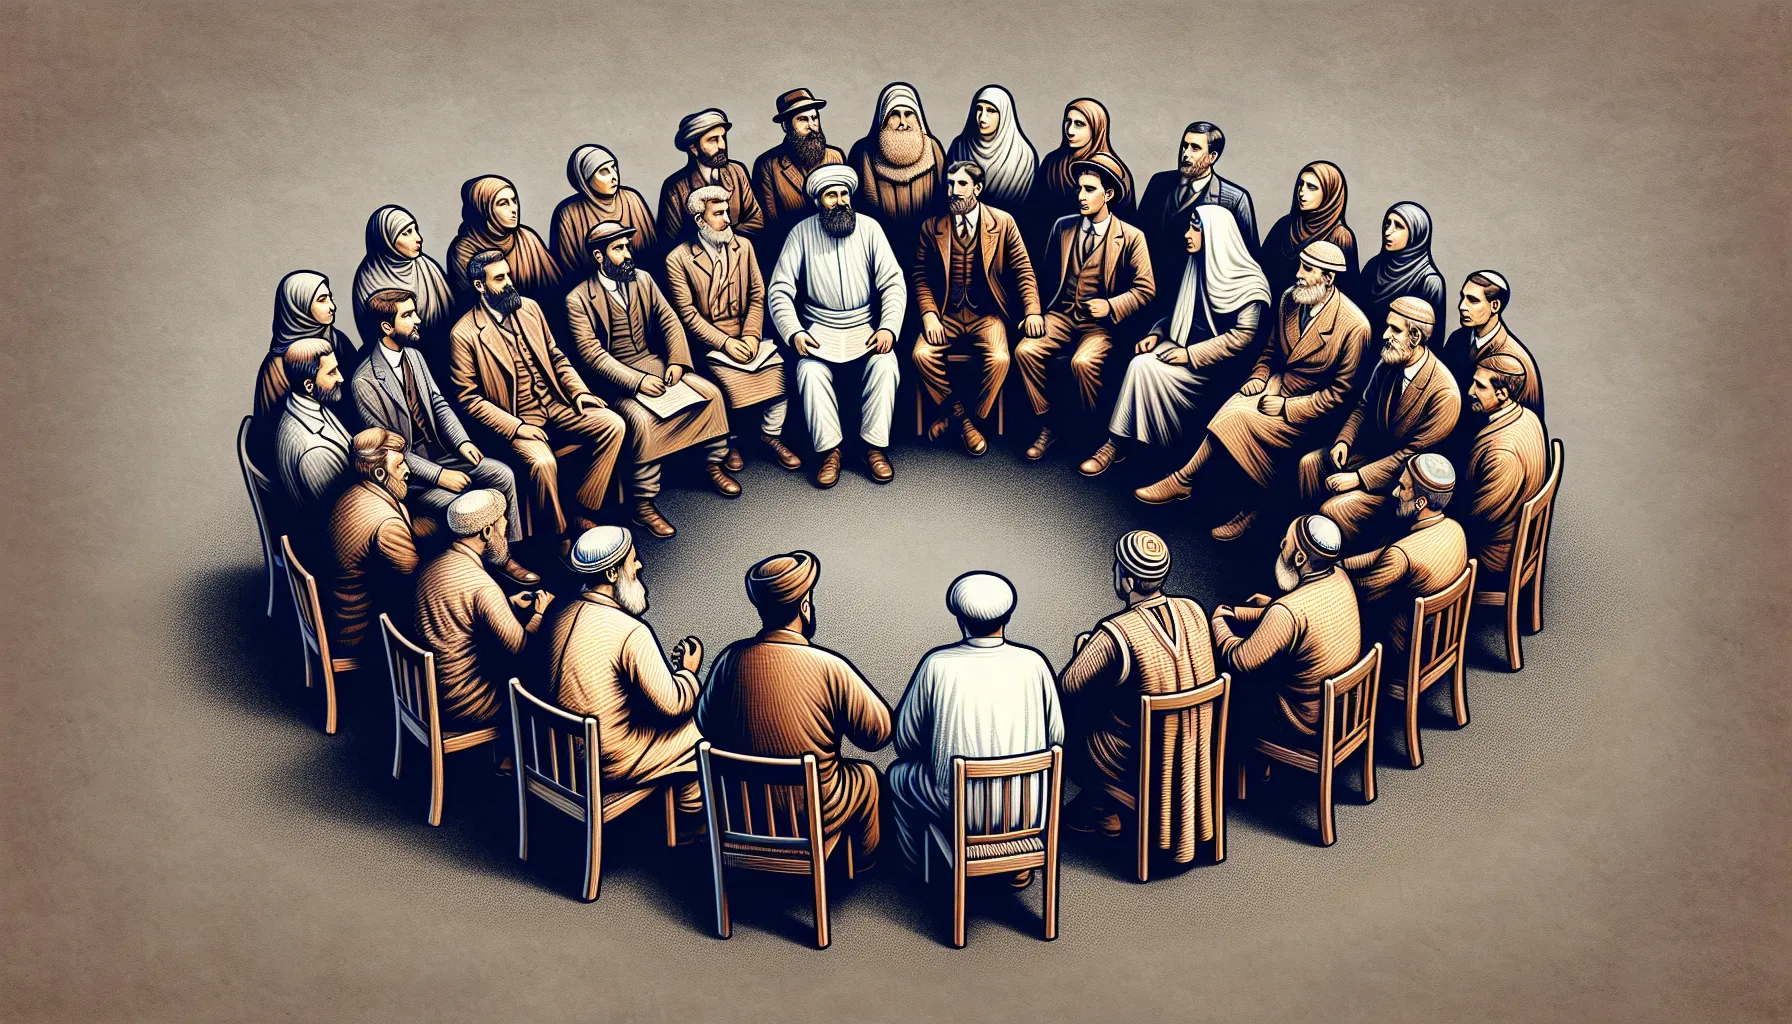 Imagen ilustrativa de personas discutiendo, representando los conflictos actuales entre descendientes de Isaac e Ismael.